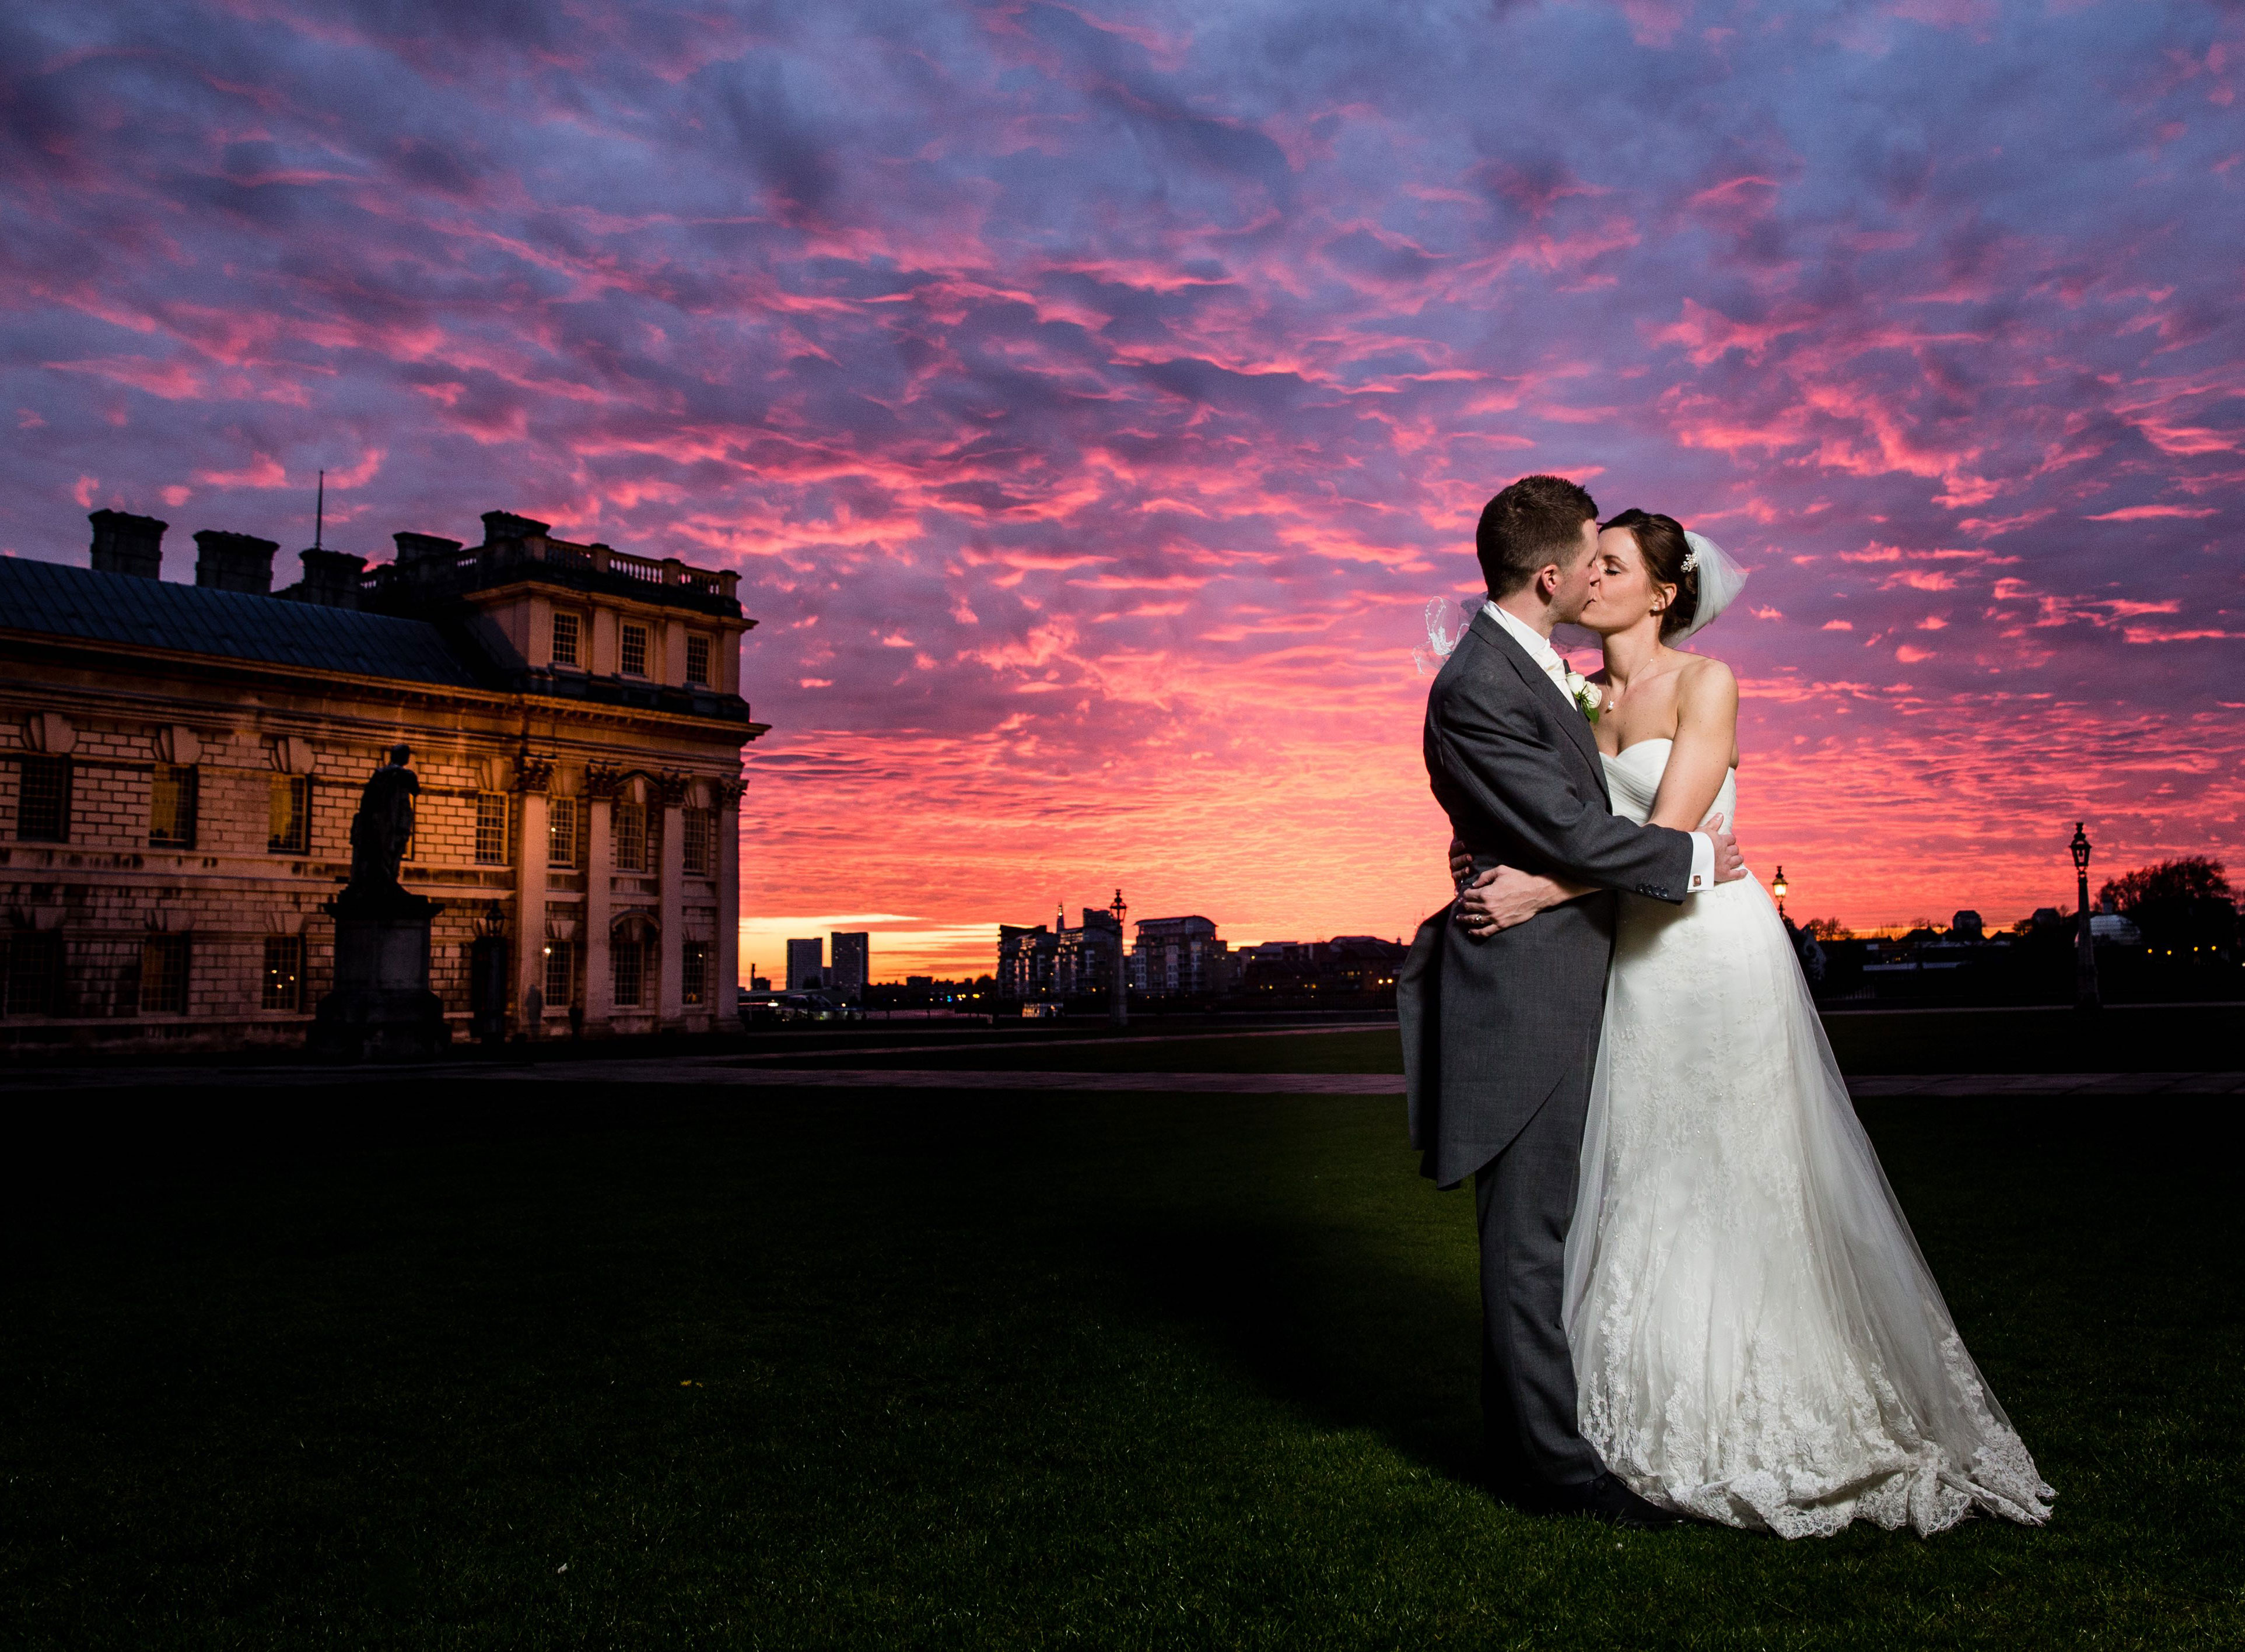 Wedding venues: London landmark buildings